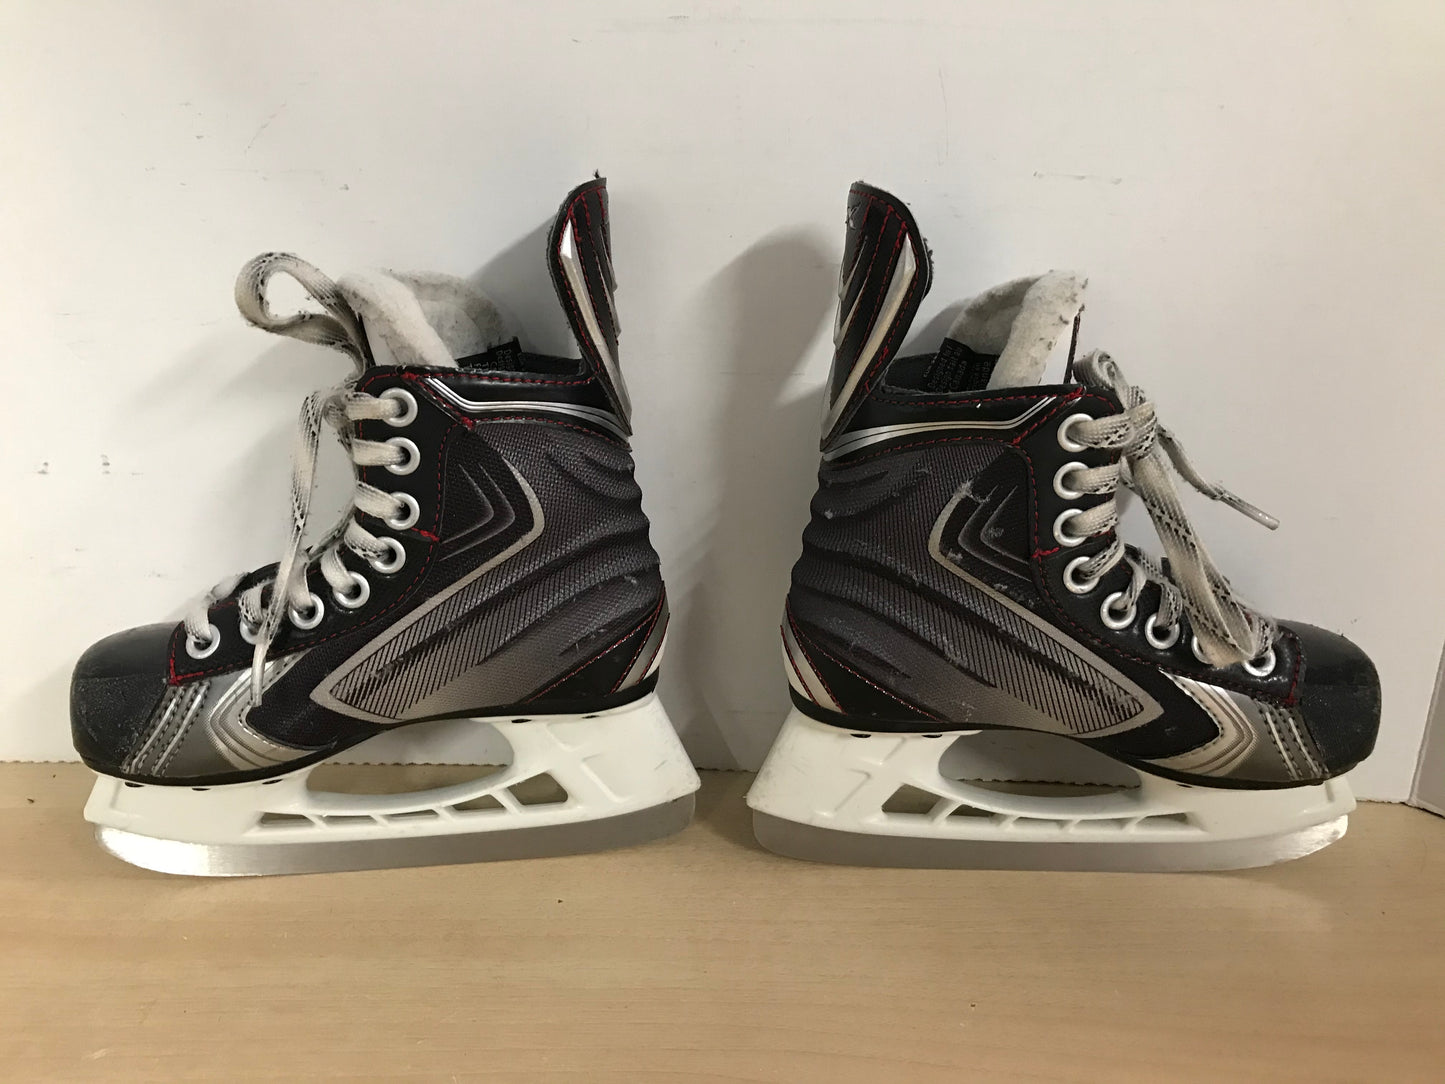 Hockey Skates Child Size 12 Shoe Size Bauer Vapor X.60